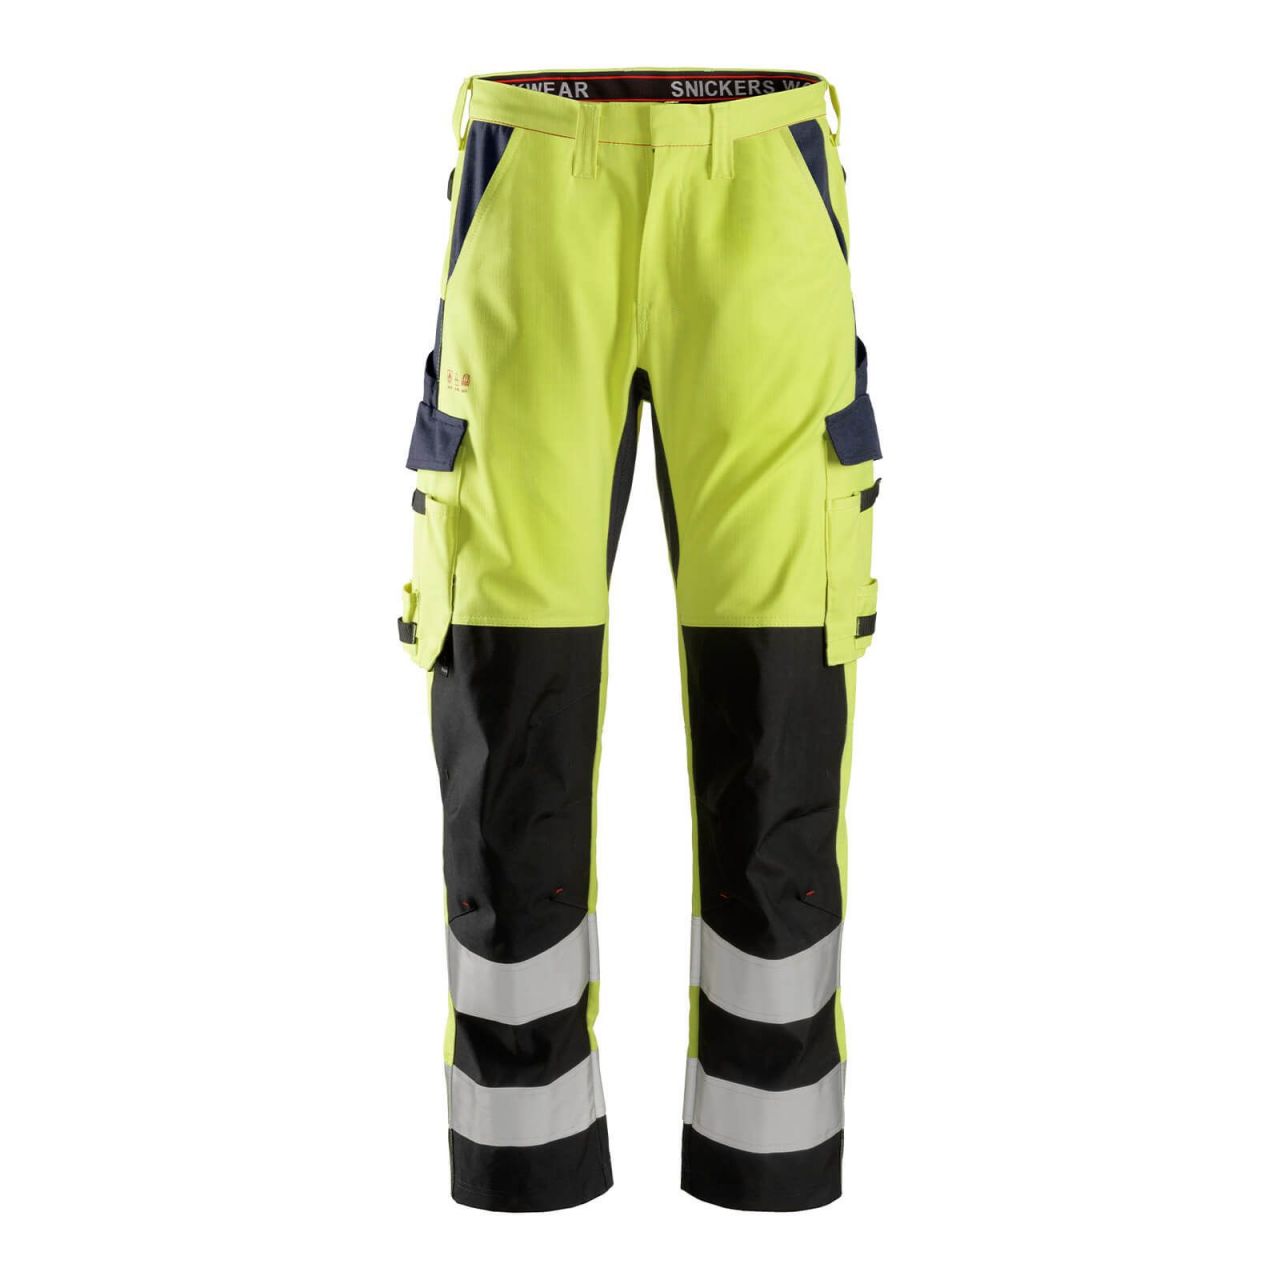 6364 Pantalones largos de trabajo de alta visibilidad clase 2 con espinilla reforzada ProtecWork amarillo-azul marino talla 164